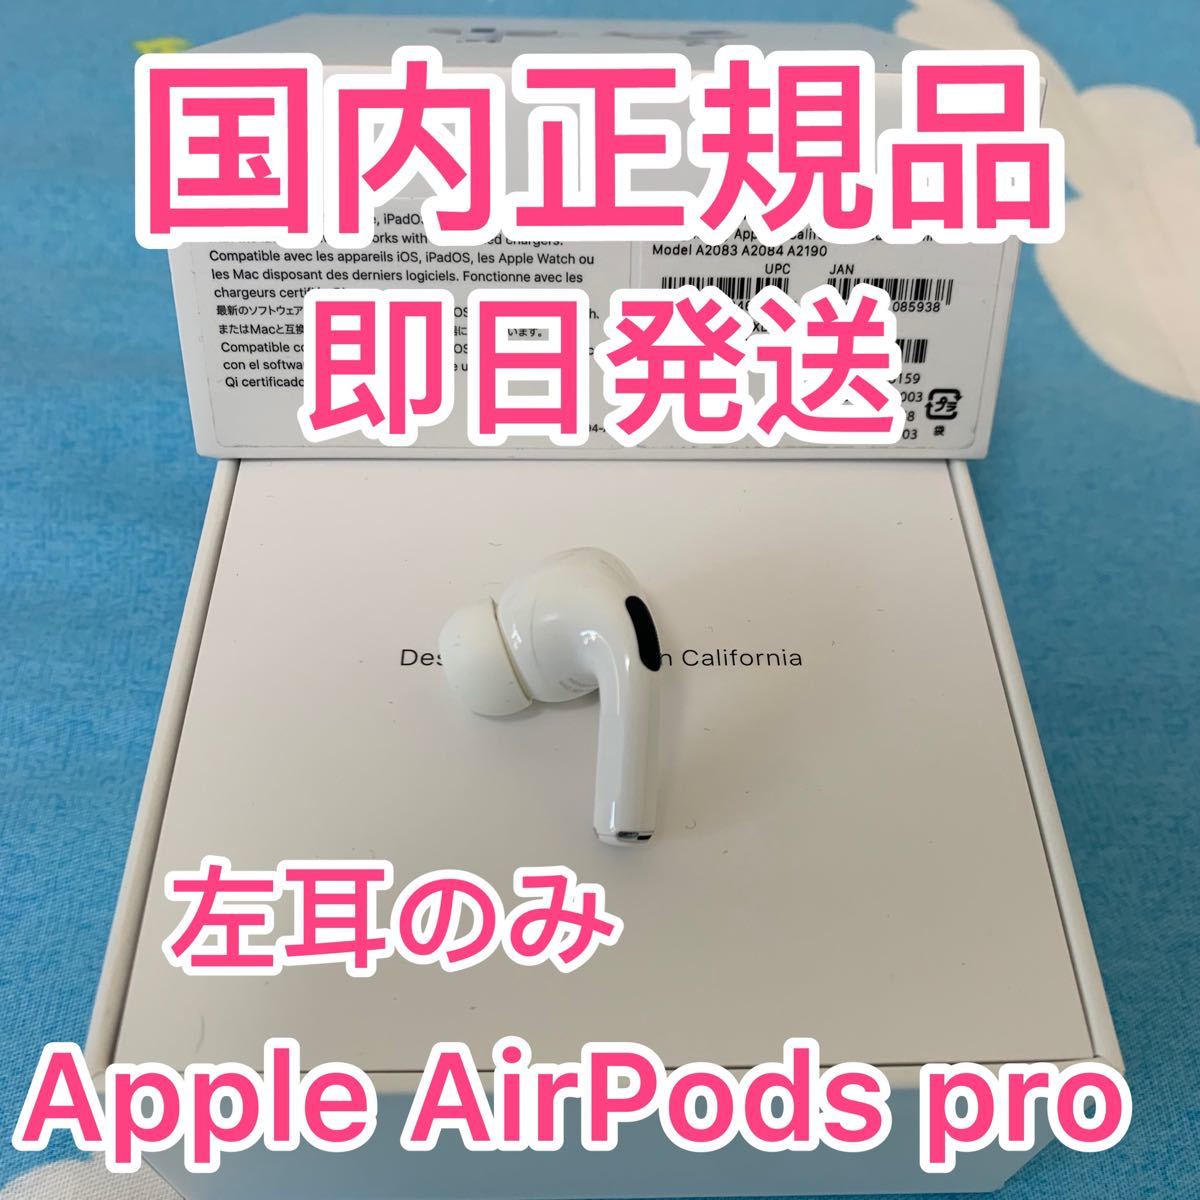 オーディオ機器 イヤフォン エアーポッズプロ AirPods Pro 左耳のみ Apple純正品 国内正規品 